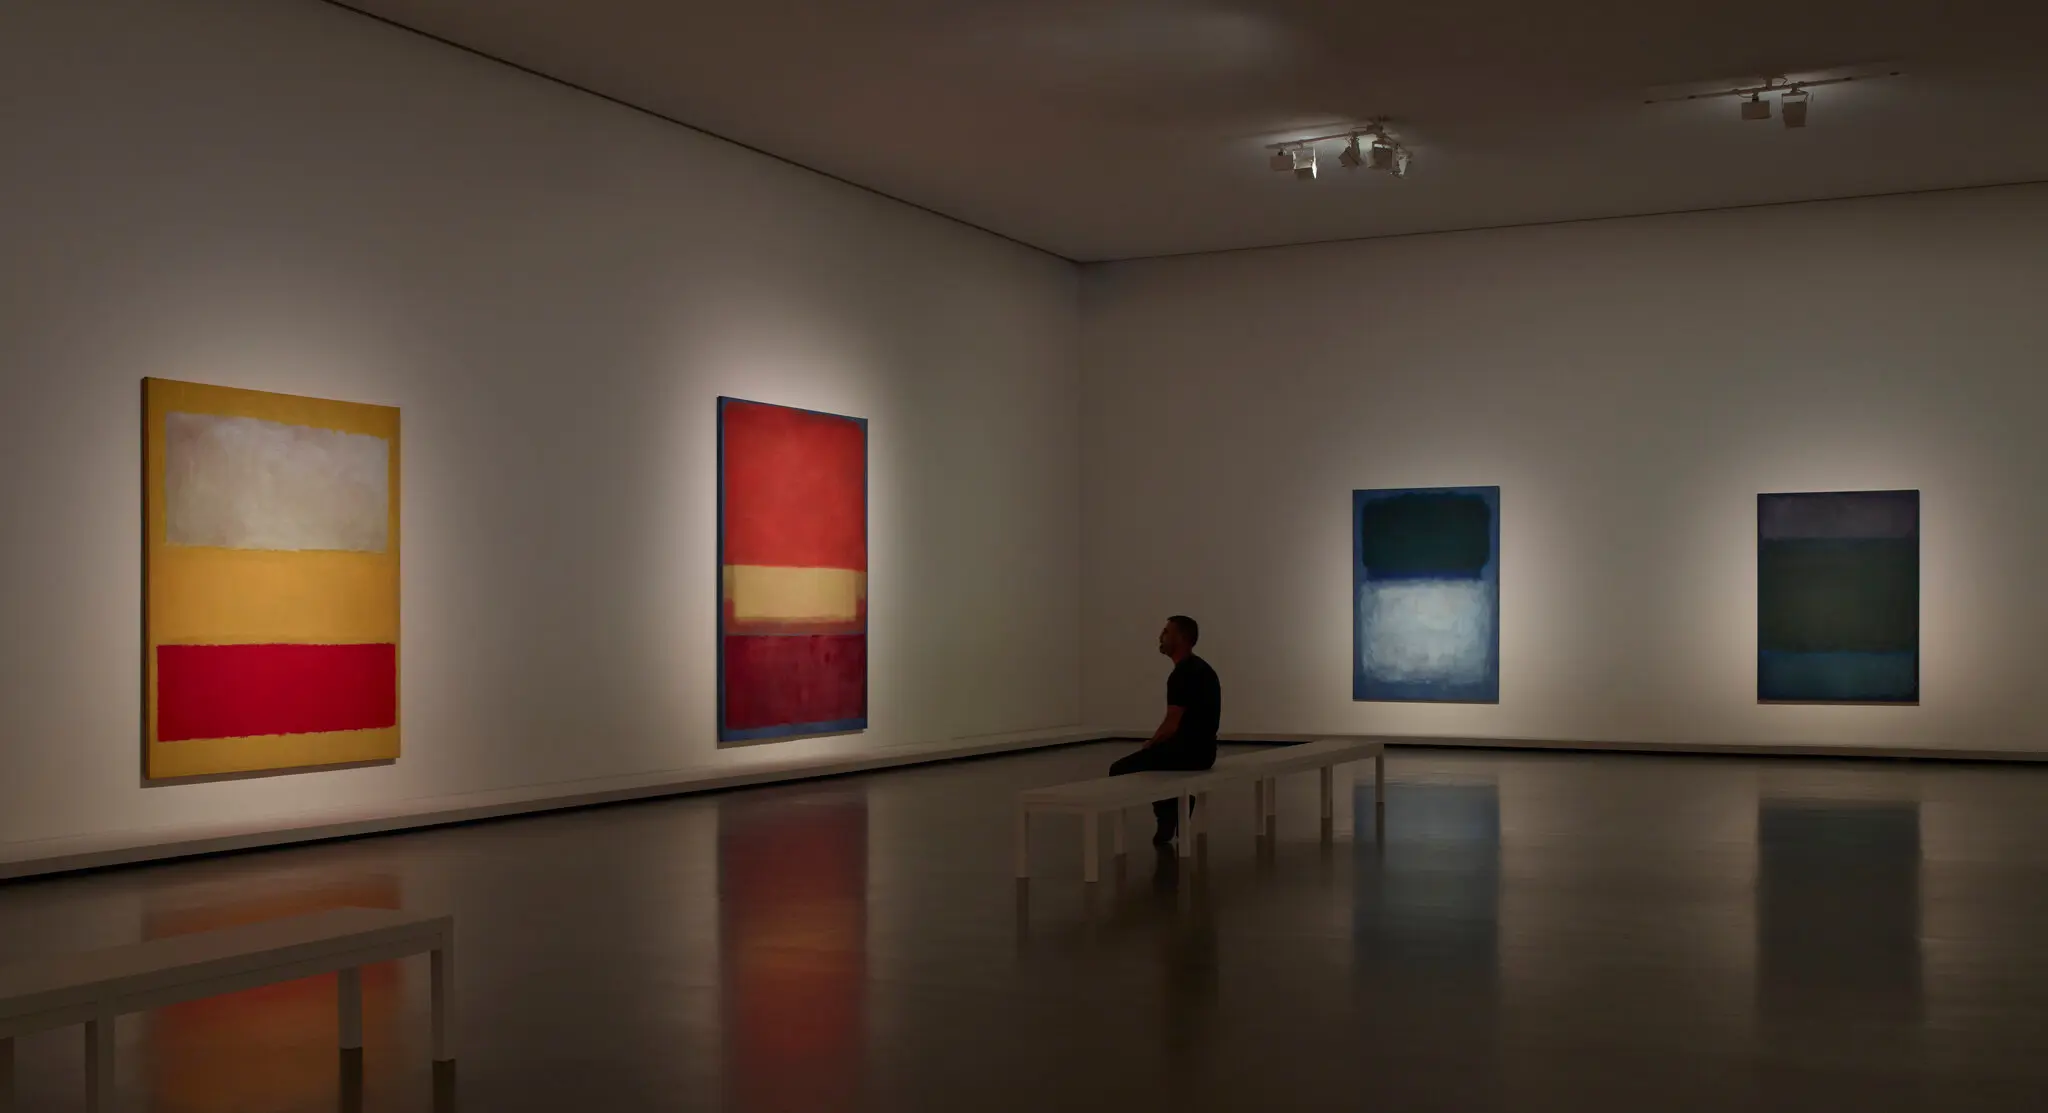 Rothko revelations